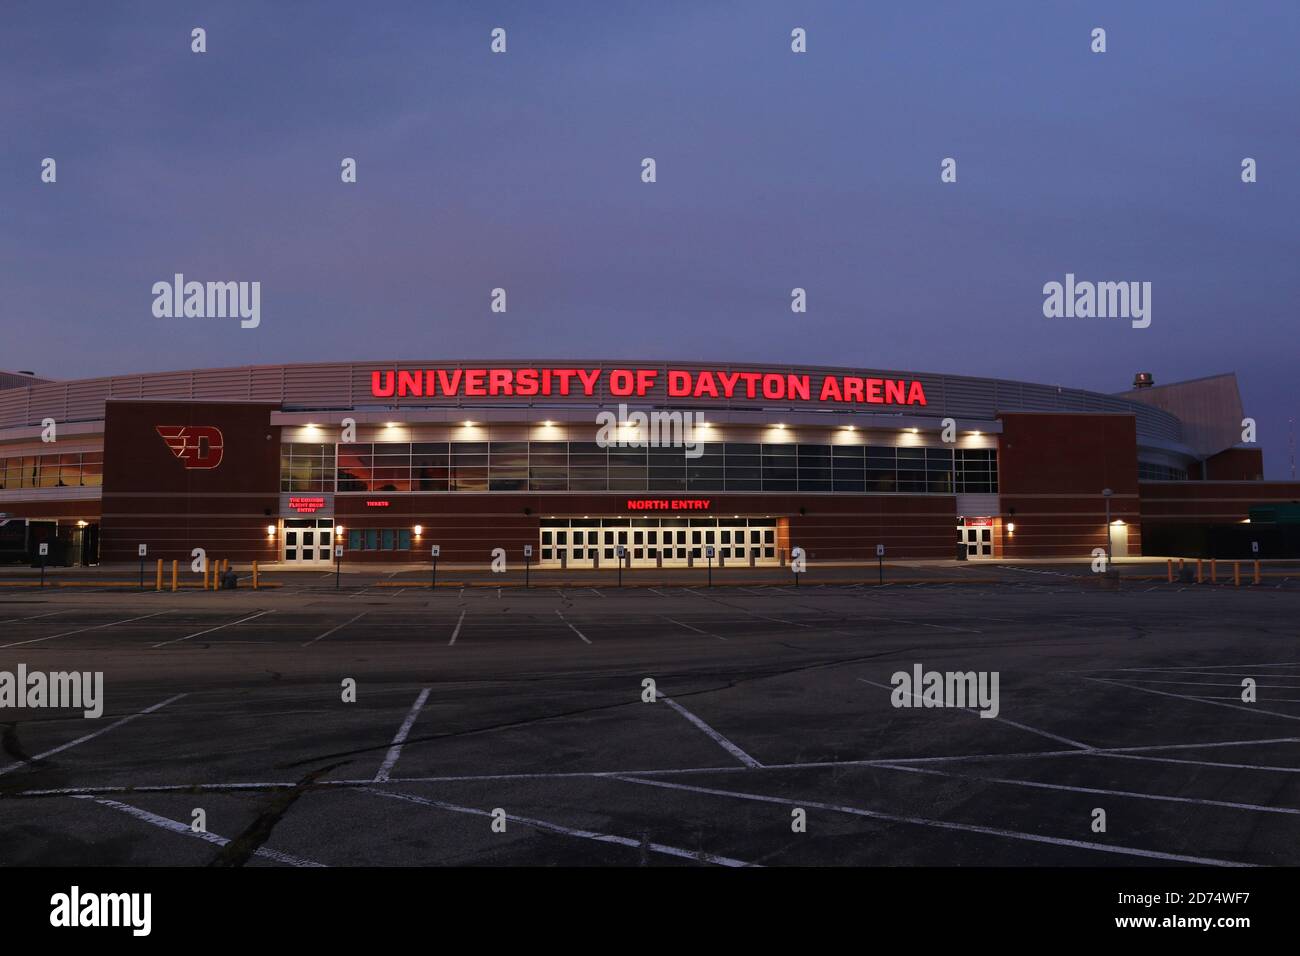 University Of Dayton Arena. Basketball- und Sportkomplex. Nordeingang bei morgendlicher Dämmerung. Dayton, Ohio, USA. Stockfoto